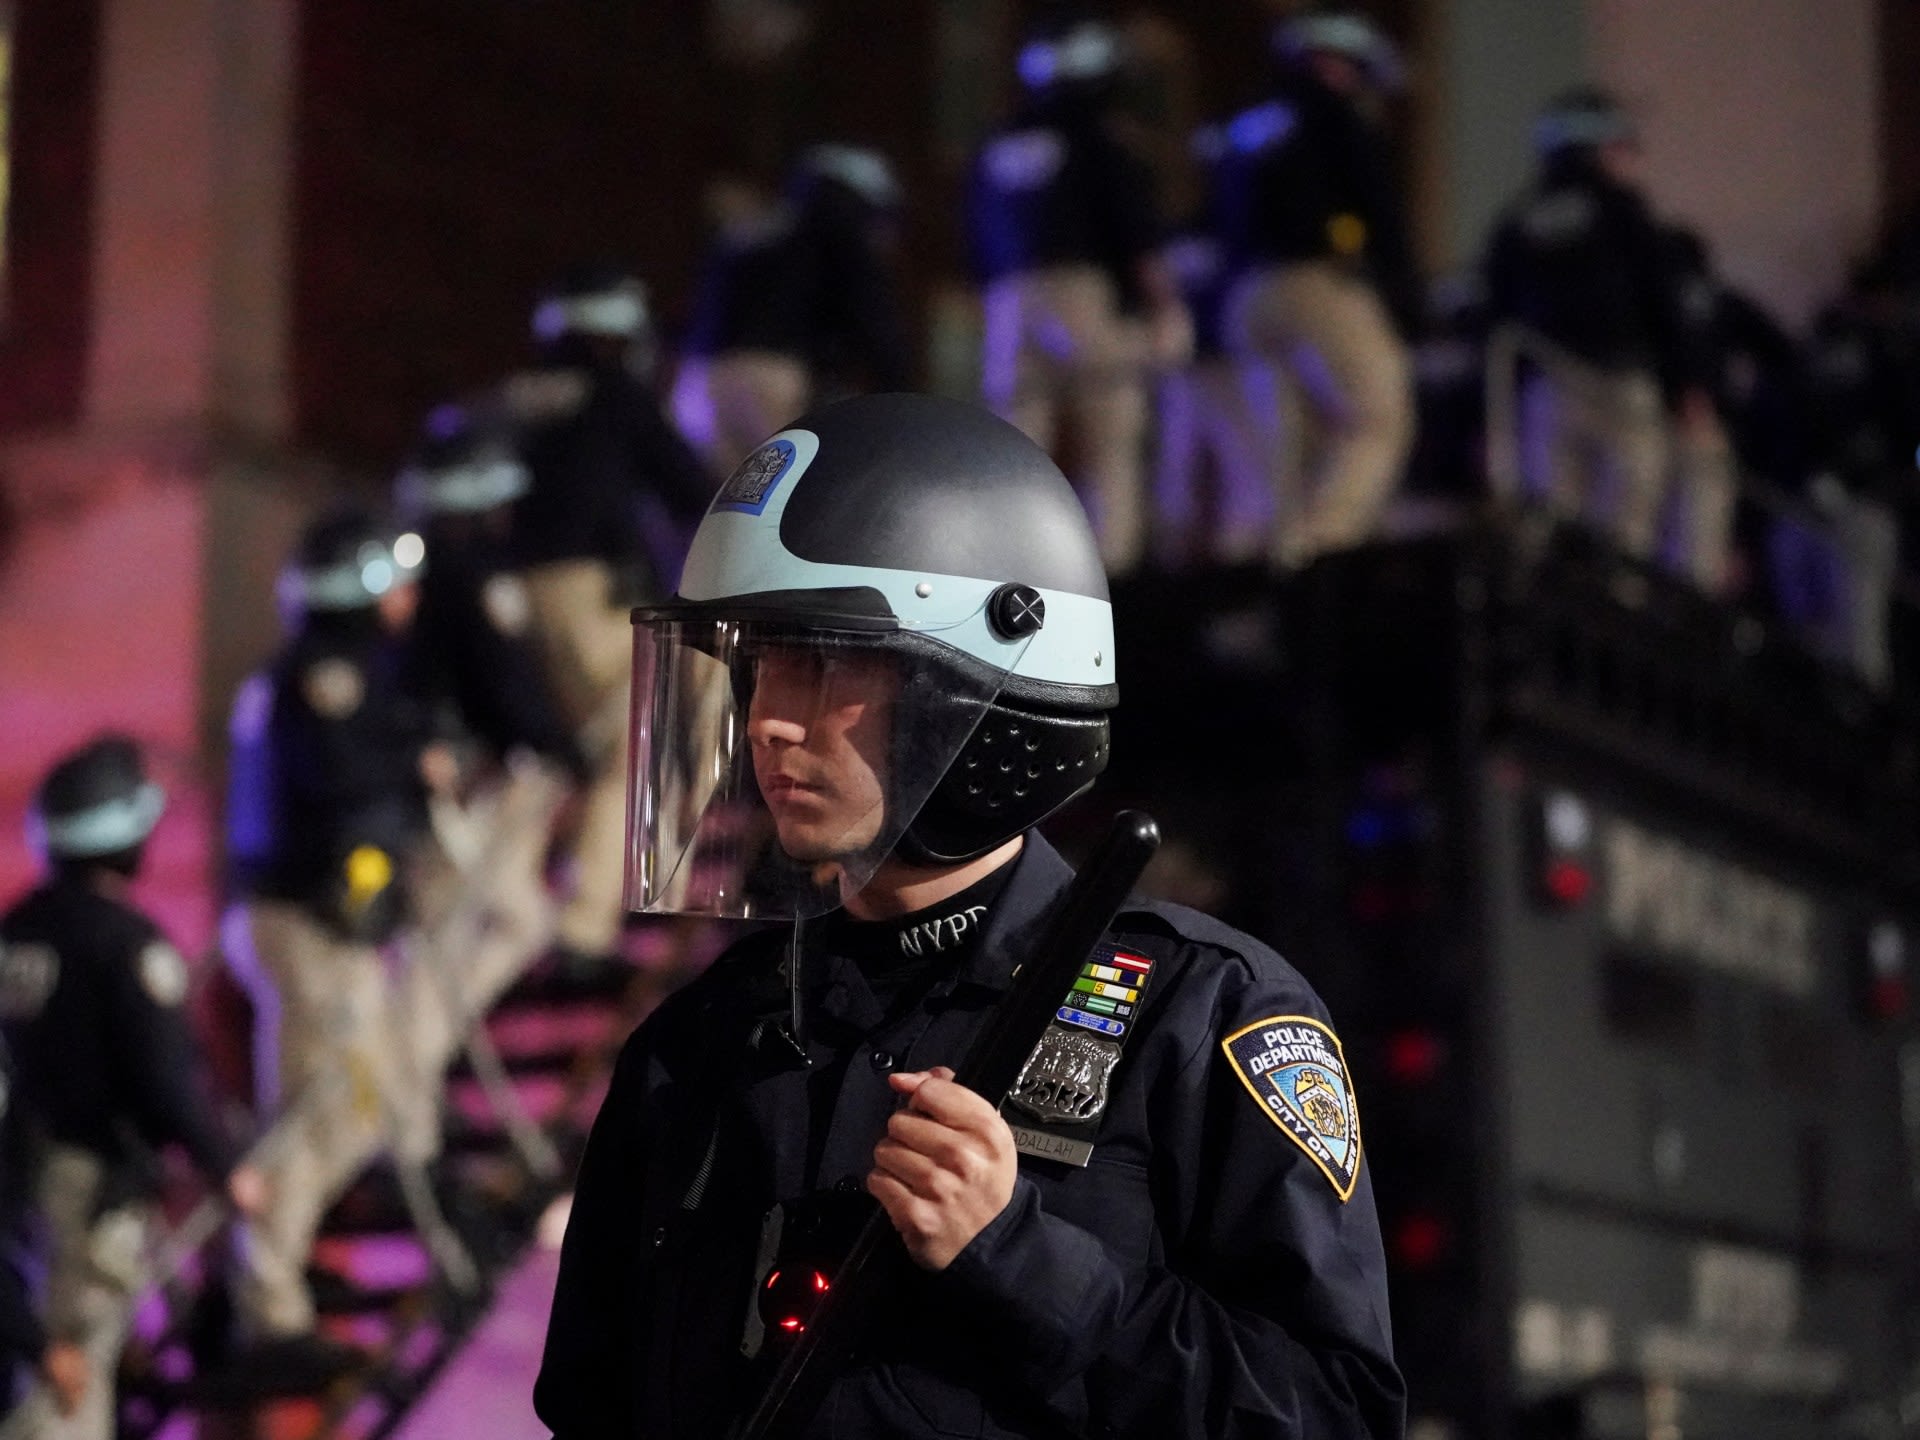 New York City police enter Columbia campus as Gaza protest escalates